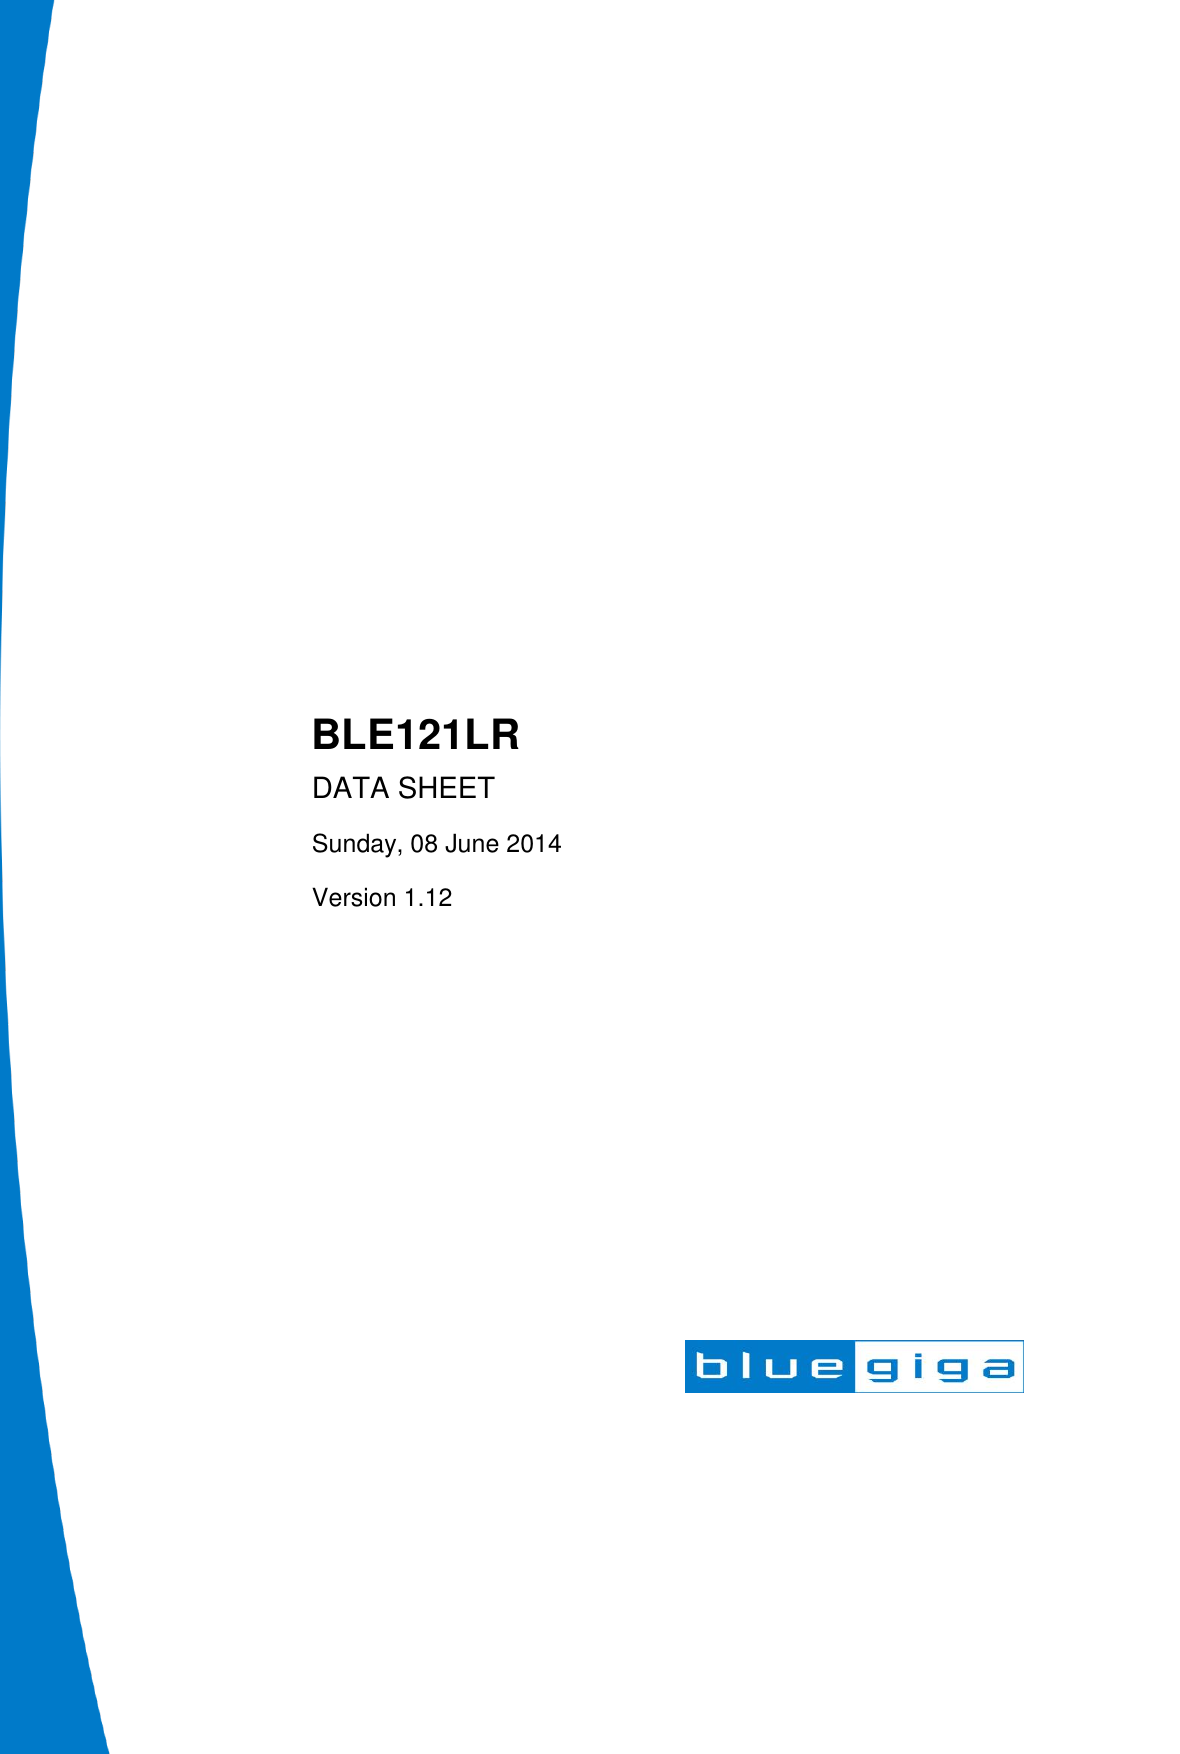                          BLE121LR DATA SHEET Sunday, 08 June 2014 Version 1.12  